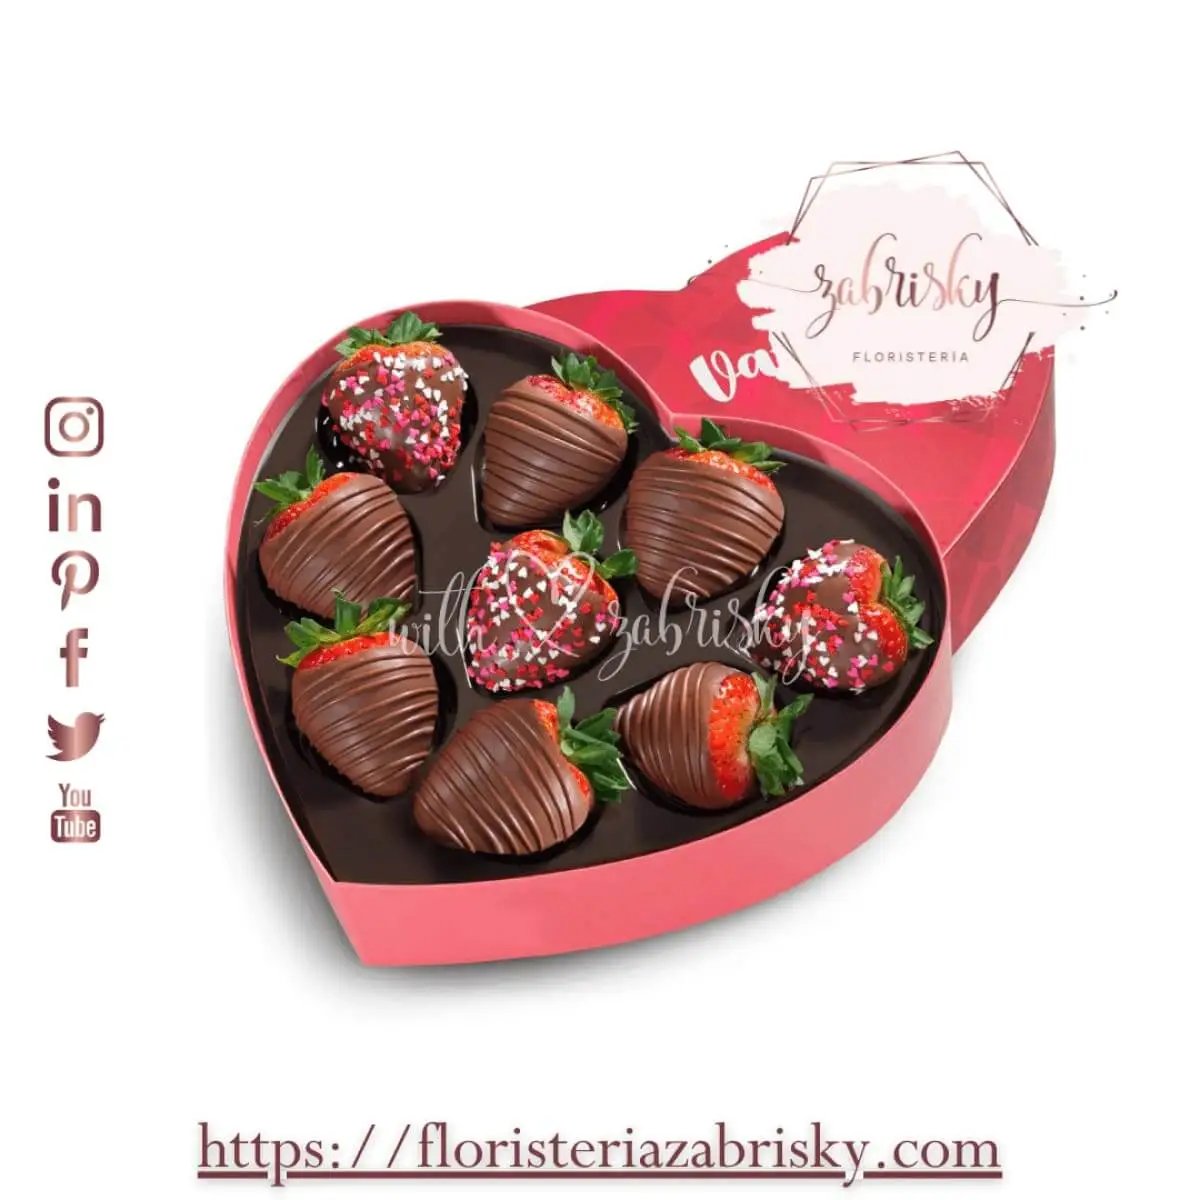 Fresas con chocolate en corazón - Floristería Zabrisky